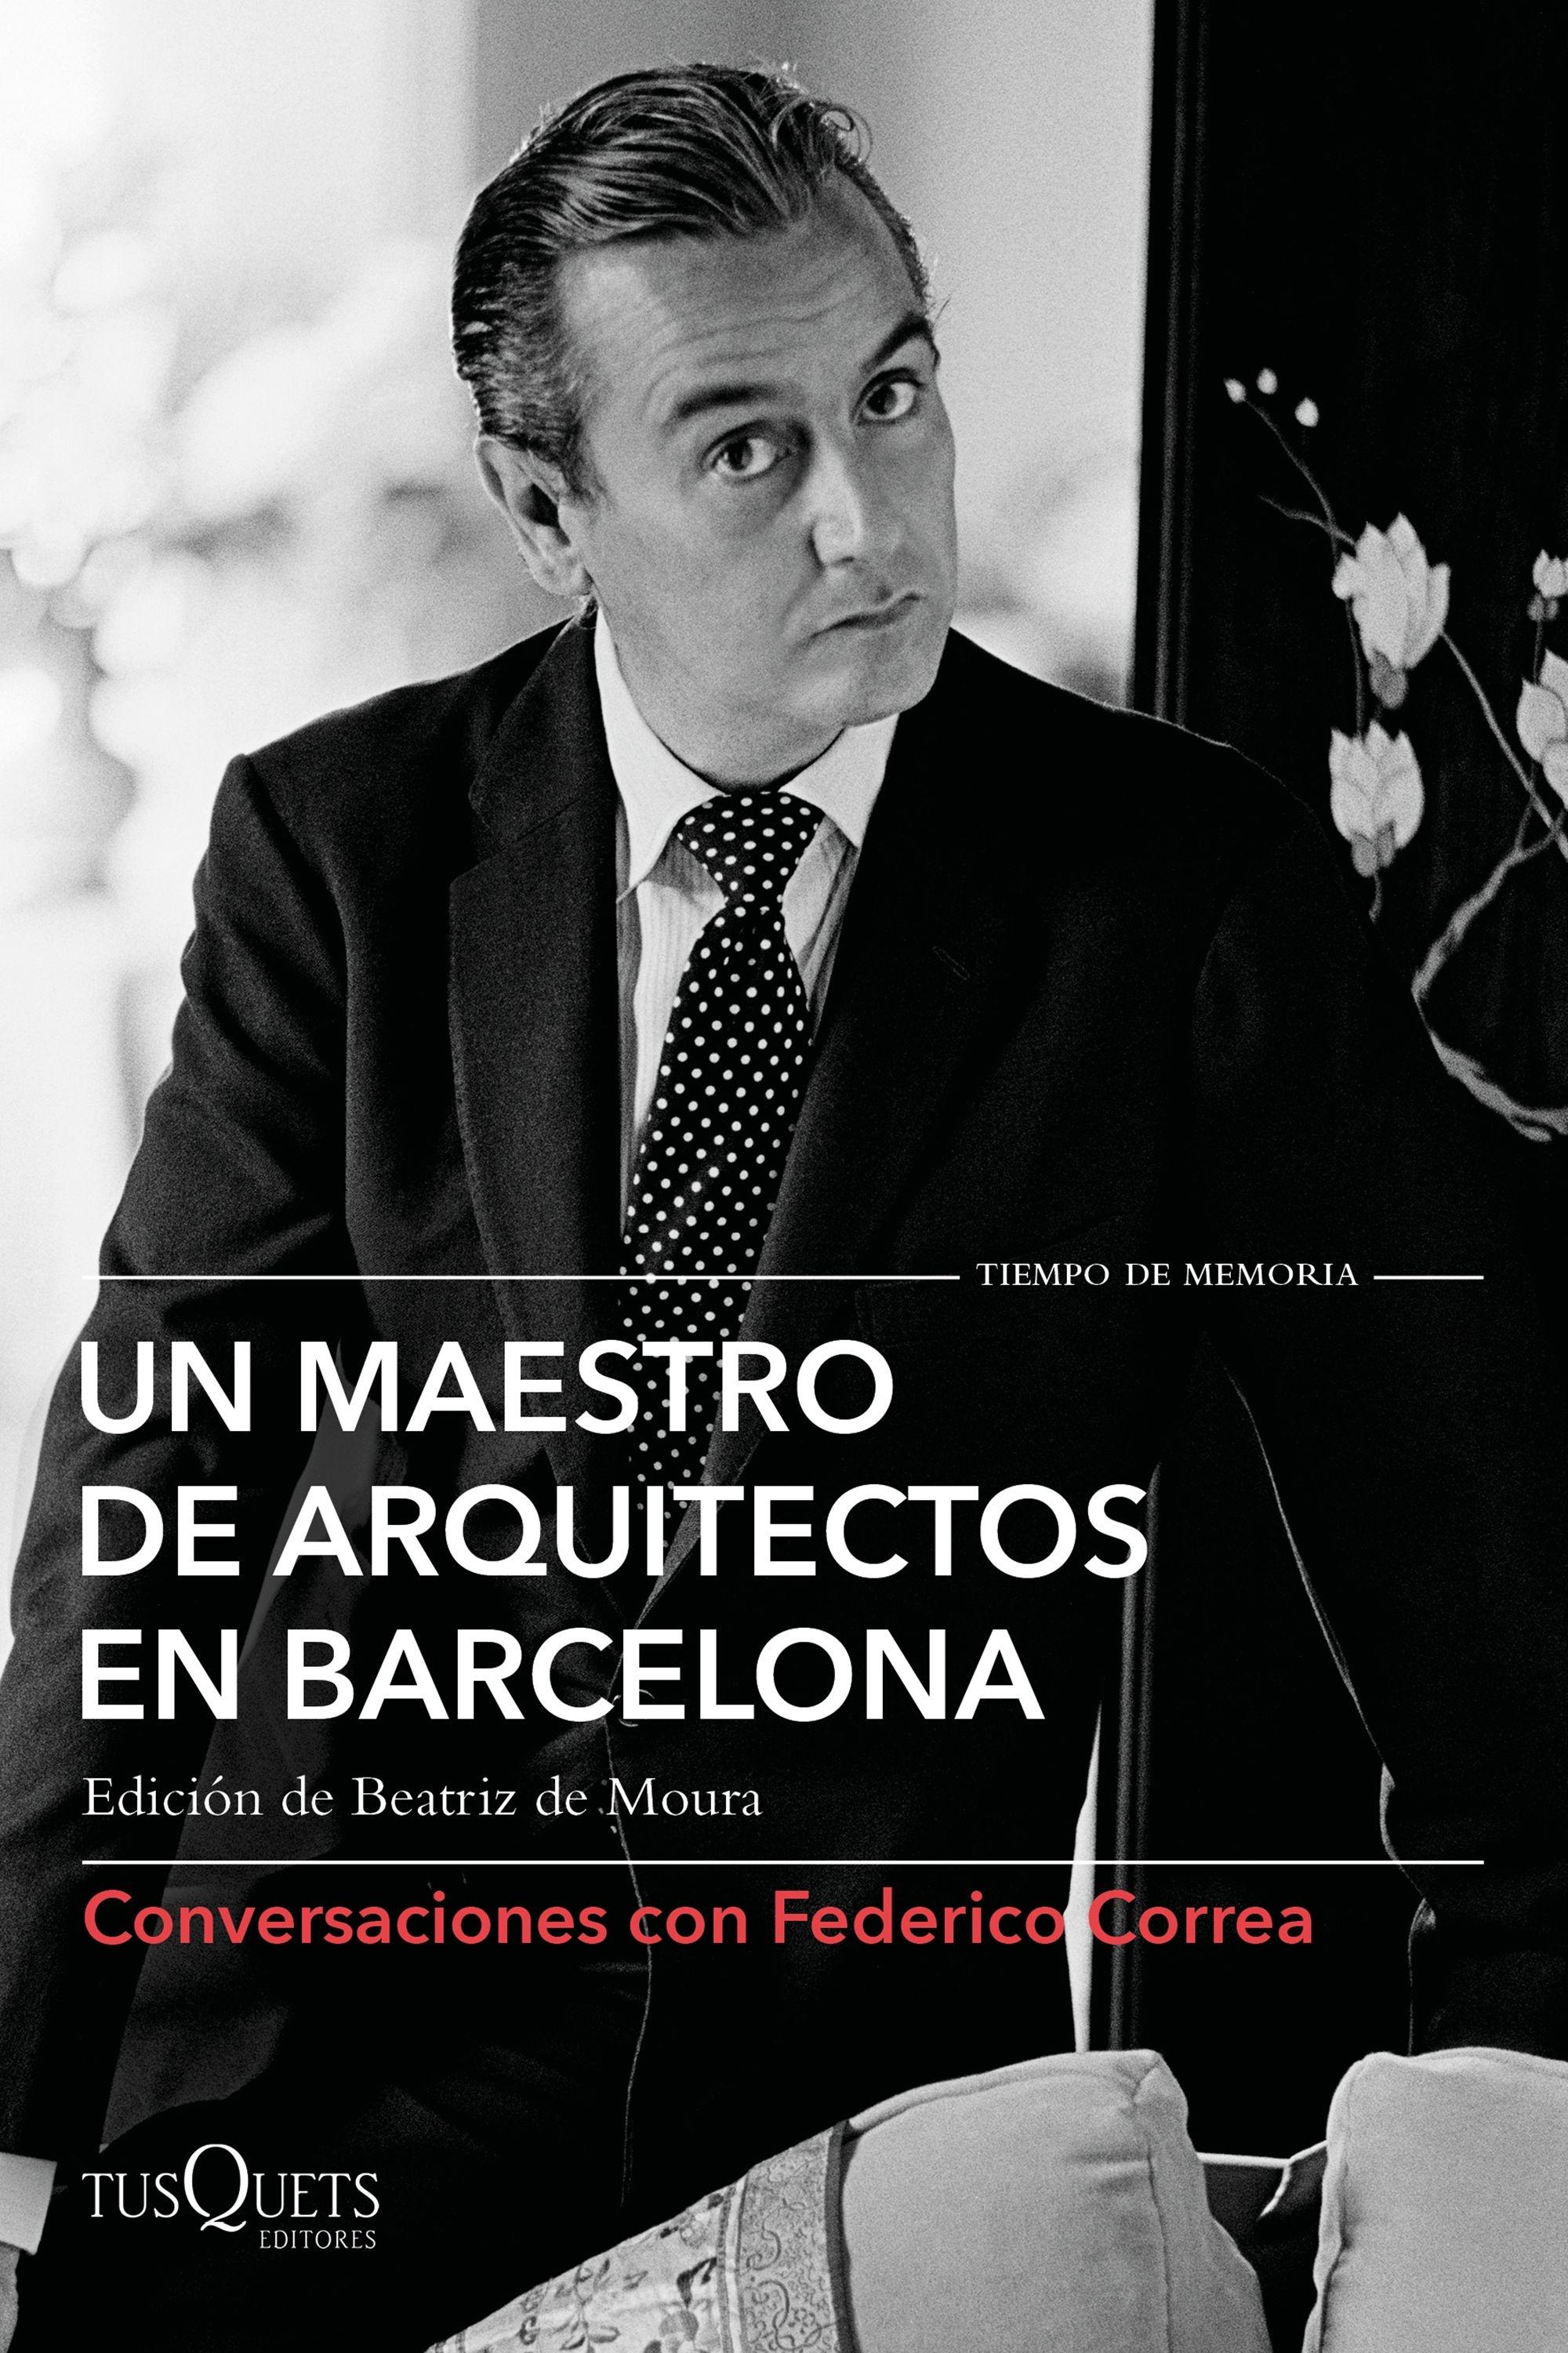 Un maestro de arquitectos en Barcelona "Conversaciones con Federico Correa". 